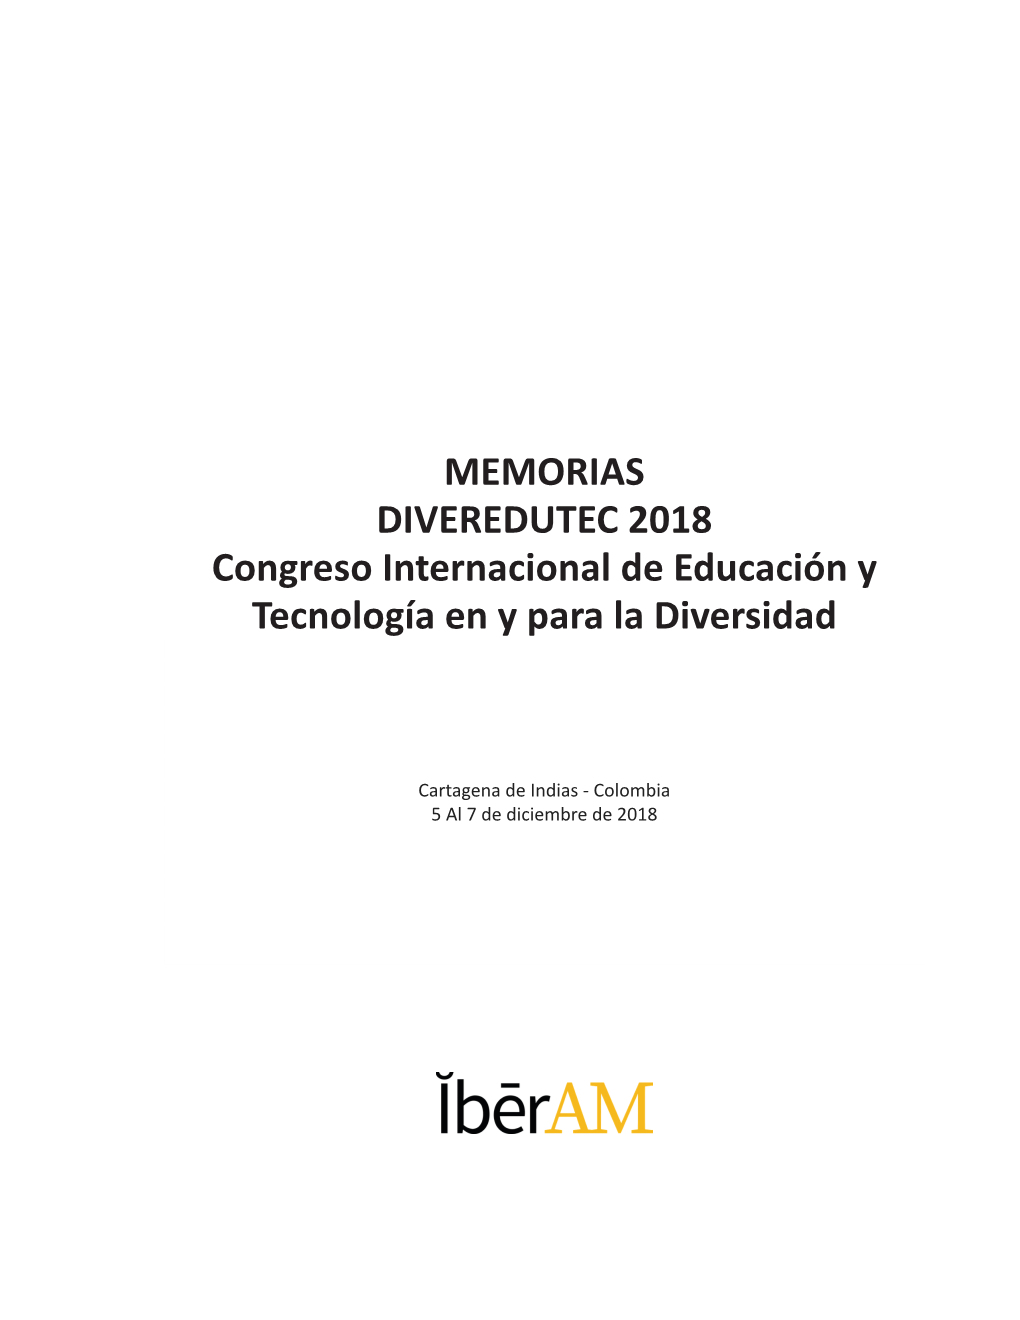 MEMORIAS DIVEREDUTEC 2018 Congreso Internacional De Educación Y Tecnología En Y Para La Diversidad